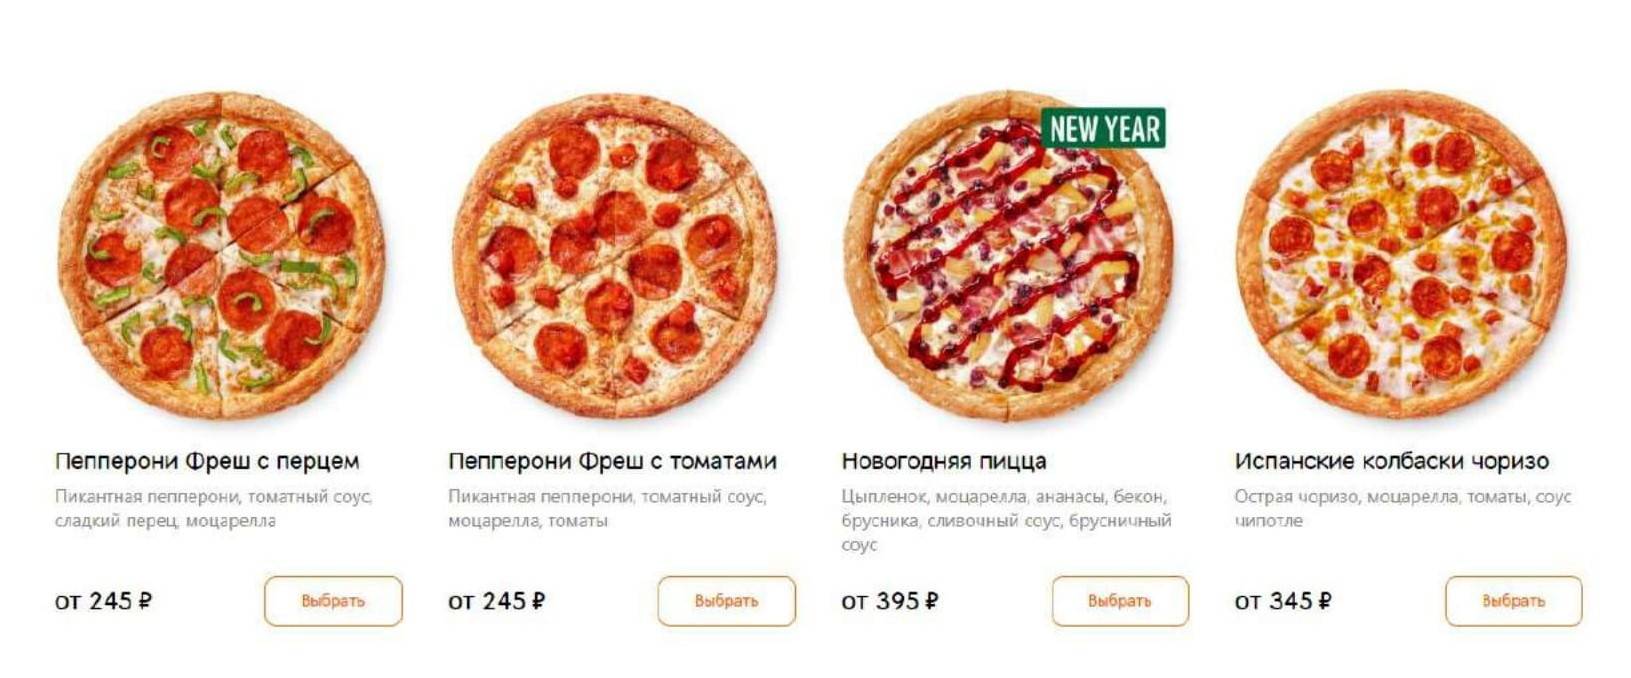 сколько стоит большая пицца пепперони в додо пицца фото 44